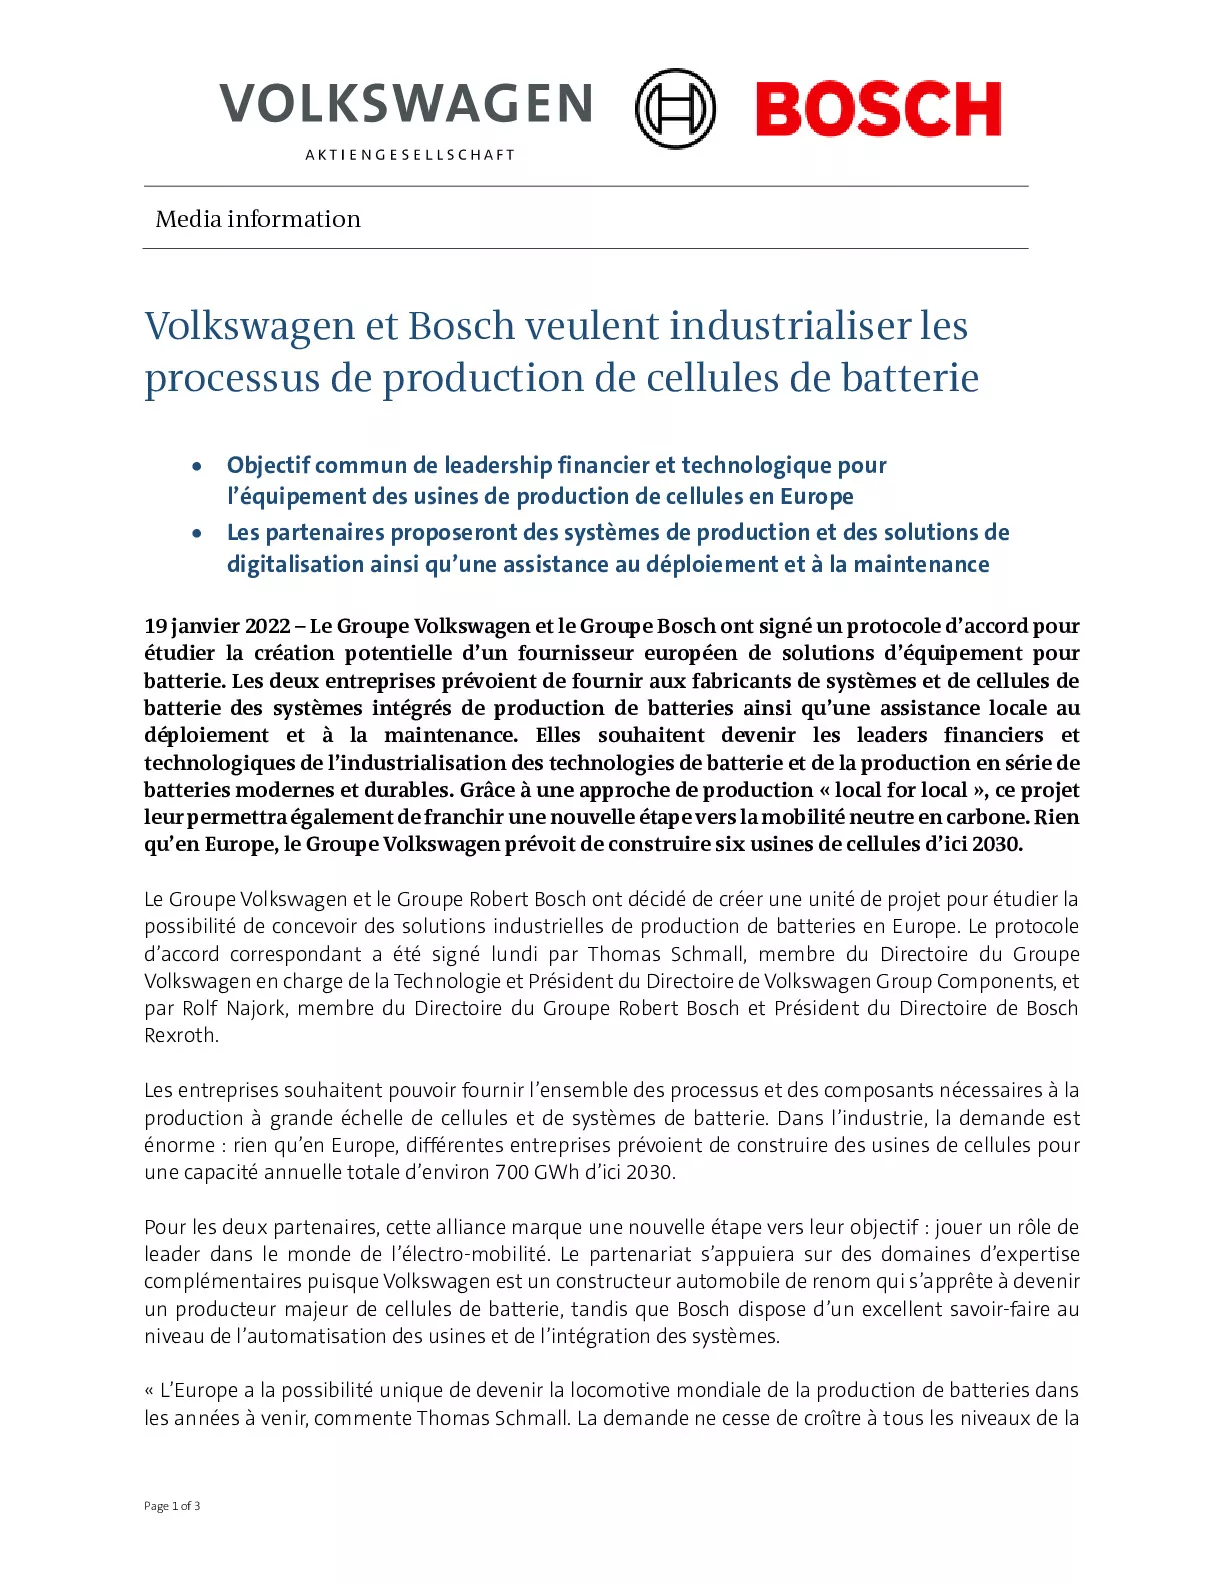 22_01_19_Volkswagen et Bosch veulent industrialiser les processus de production de cellules de batterie-pdf